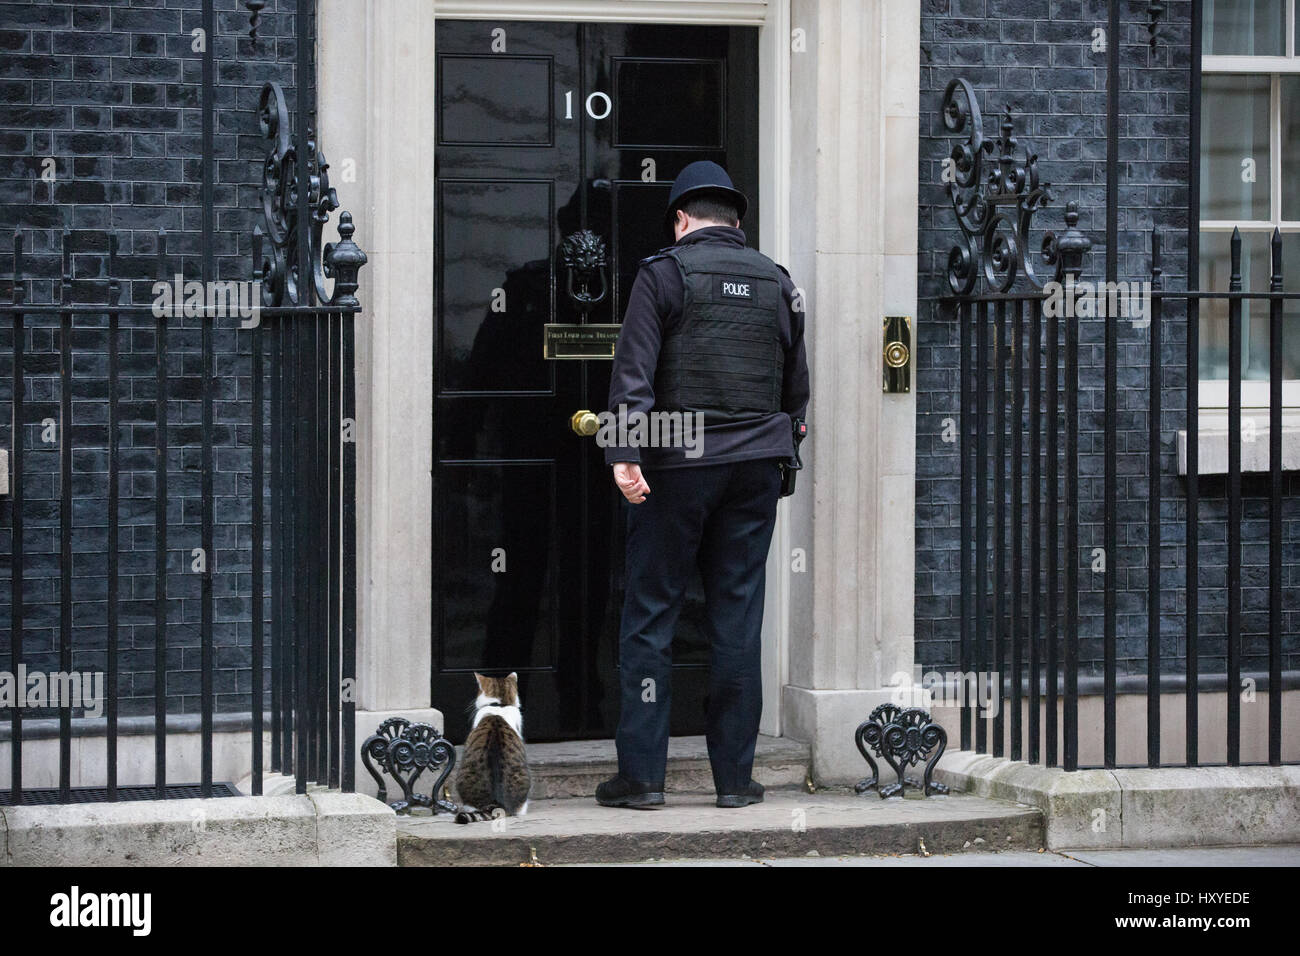 Londra, Regno Unito. Il 30 marzo, 2017. Un funzionario di polizia consente a Larry, Chief Mouser al Cabinet Office, in 10 di Downing Street. Foto Stock